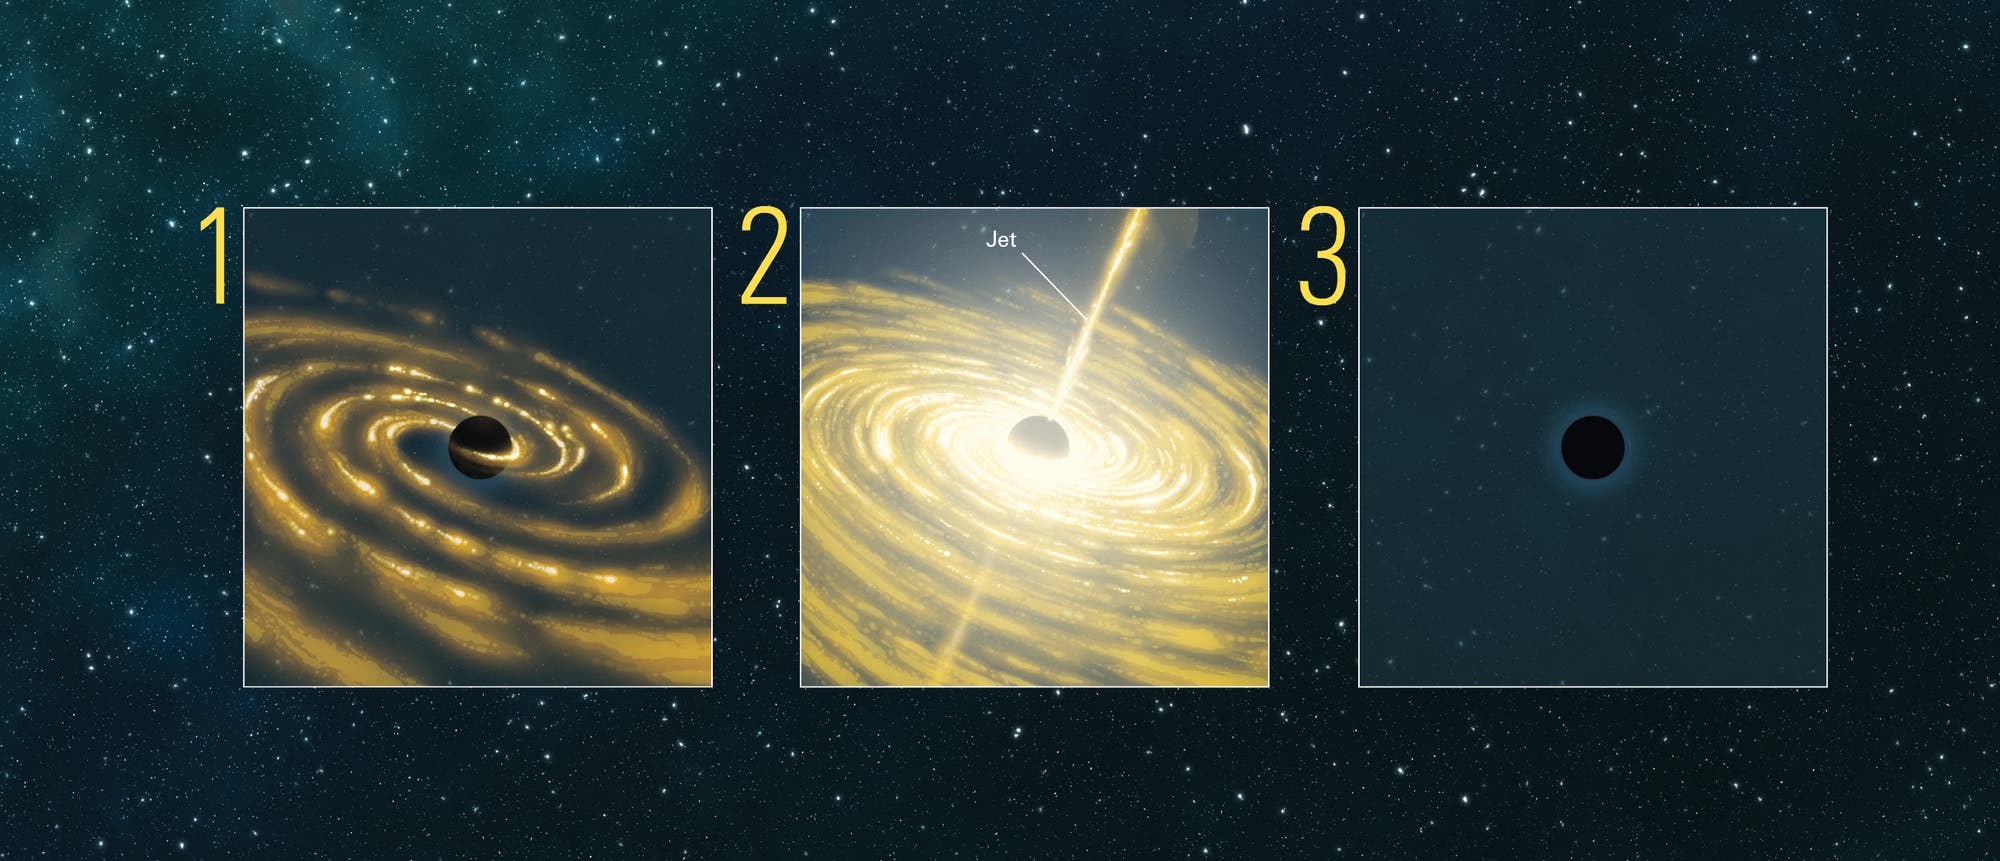 Ein TDE ist das einzige Ereignis, bei dem Astronomen verfolgen können, wie ein Schwarzes Loch aktiv wird, Material verzehrt und wieder zum Ruhezustand zurückkehrt. Aus der Zeit, die eine Akkretionsscheibe braucht, sich zu bilden (1), maximale Helligkeit zu erreichen (2) und zu verlöschen (3), lassen sich die Größe des zerstörten Sterns sowie Masse und Drehimpuls des Schwarzen Lochs erschließen. Außerdem können die Forscher Stoßwellen in der Scheibe sowie die Entstehung relativistischer Jets verfolgen – Teilchenströme, die fast mit Lichtgeschwindigkeit von den Polen des Schwarzen Lochs ausgehen.